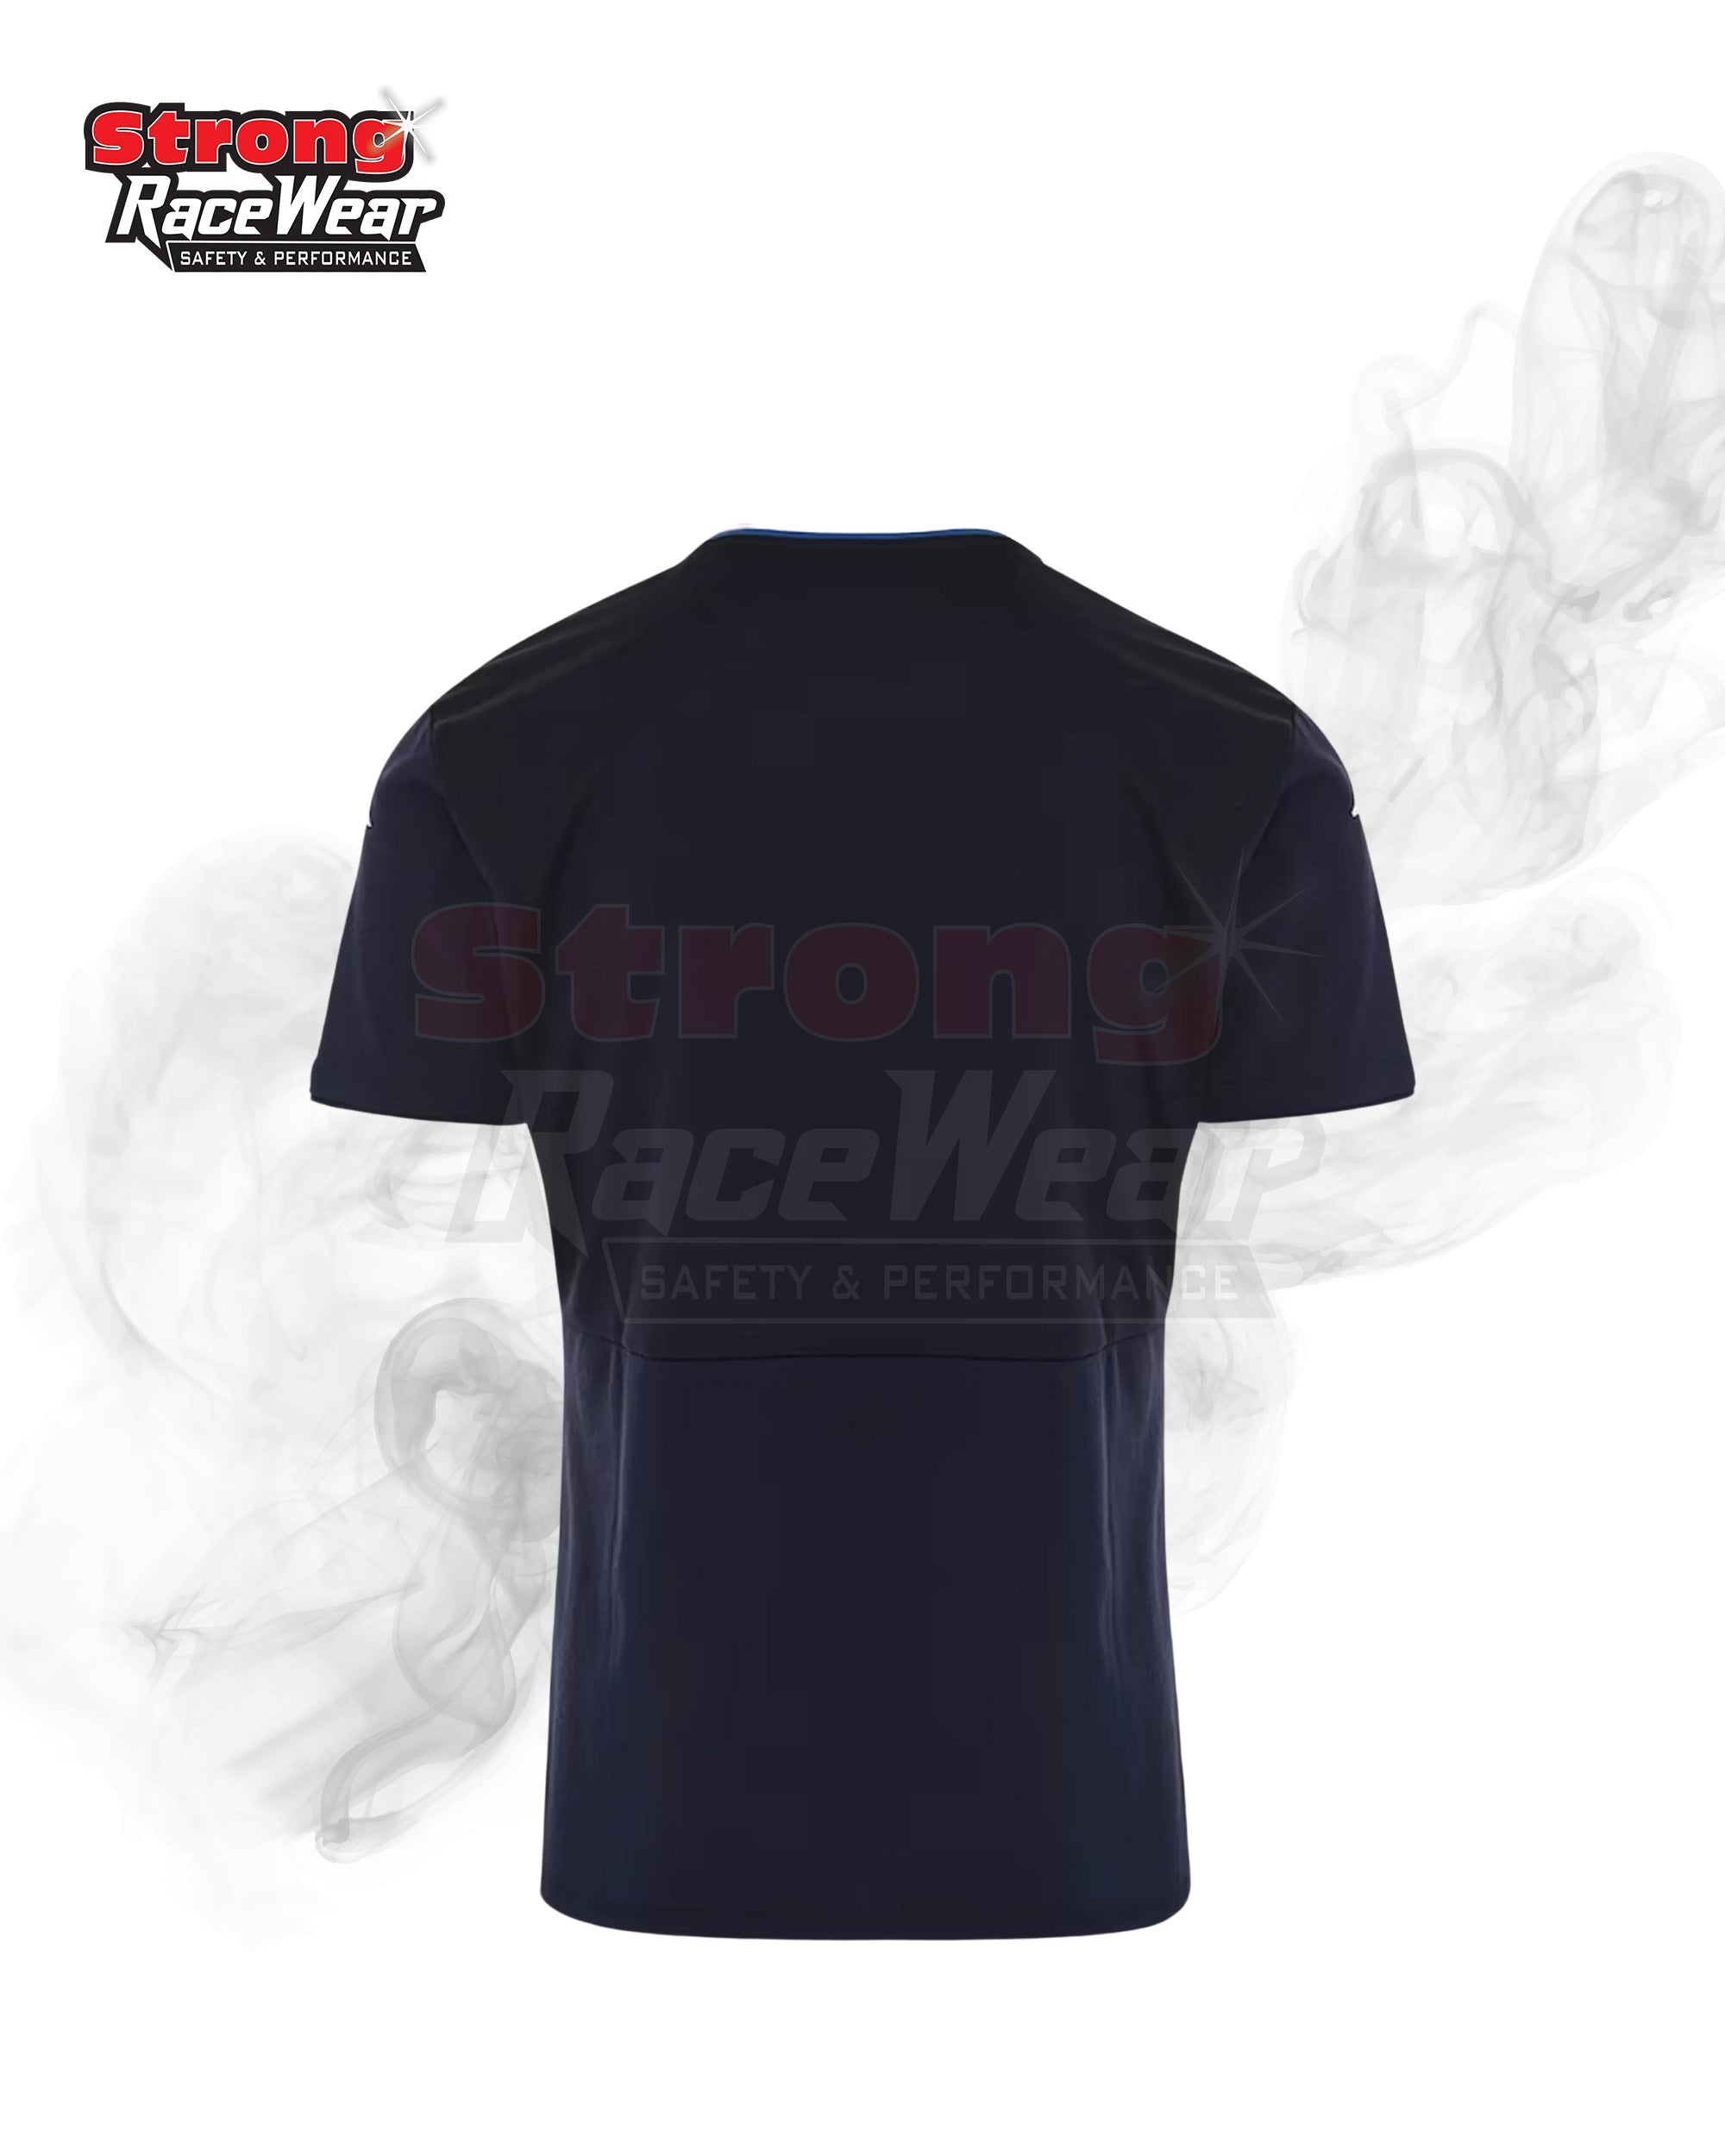 BWT Alpine F1 Team Fan Wear T-Shirt